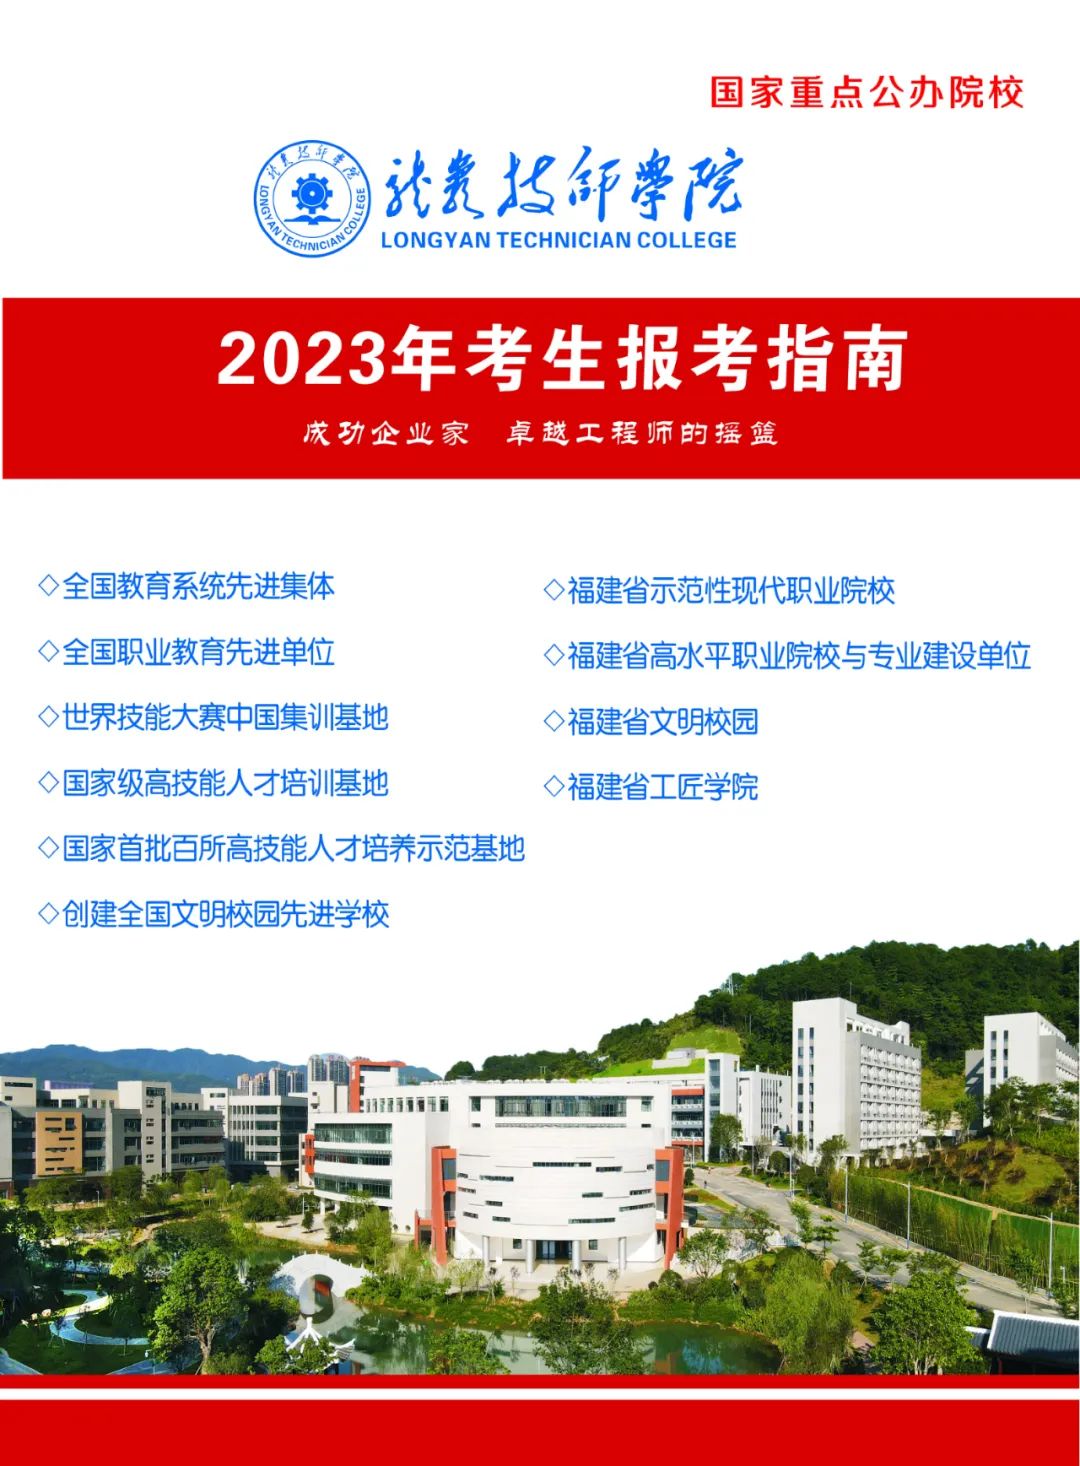 龙岩技师学院2023年招生简章